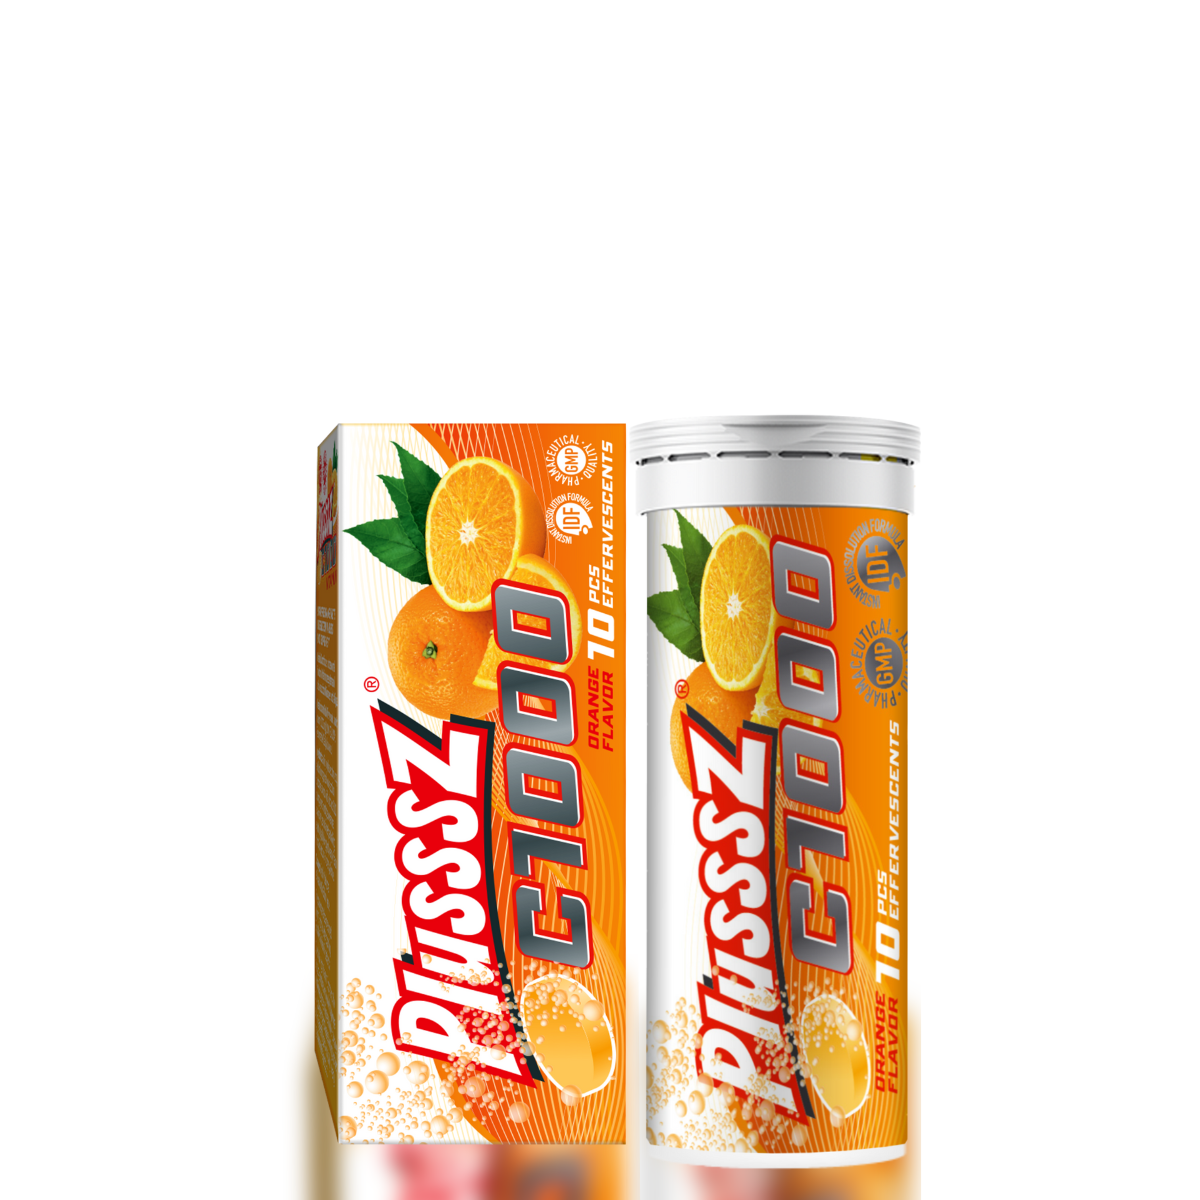 Viên sủi Plusssz C1000 bổ sung 1000mg Vitamin C hỗ trợ tăng cường sức đề kháng, hỗ trợ tăng cường sức khỏe